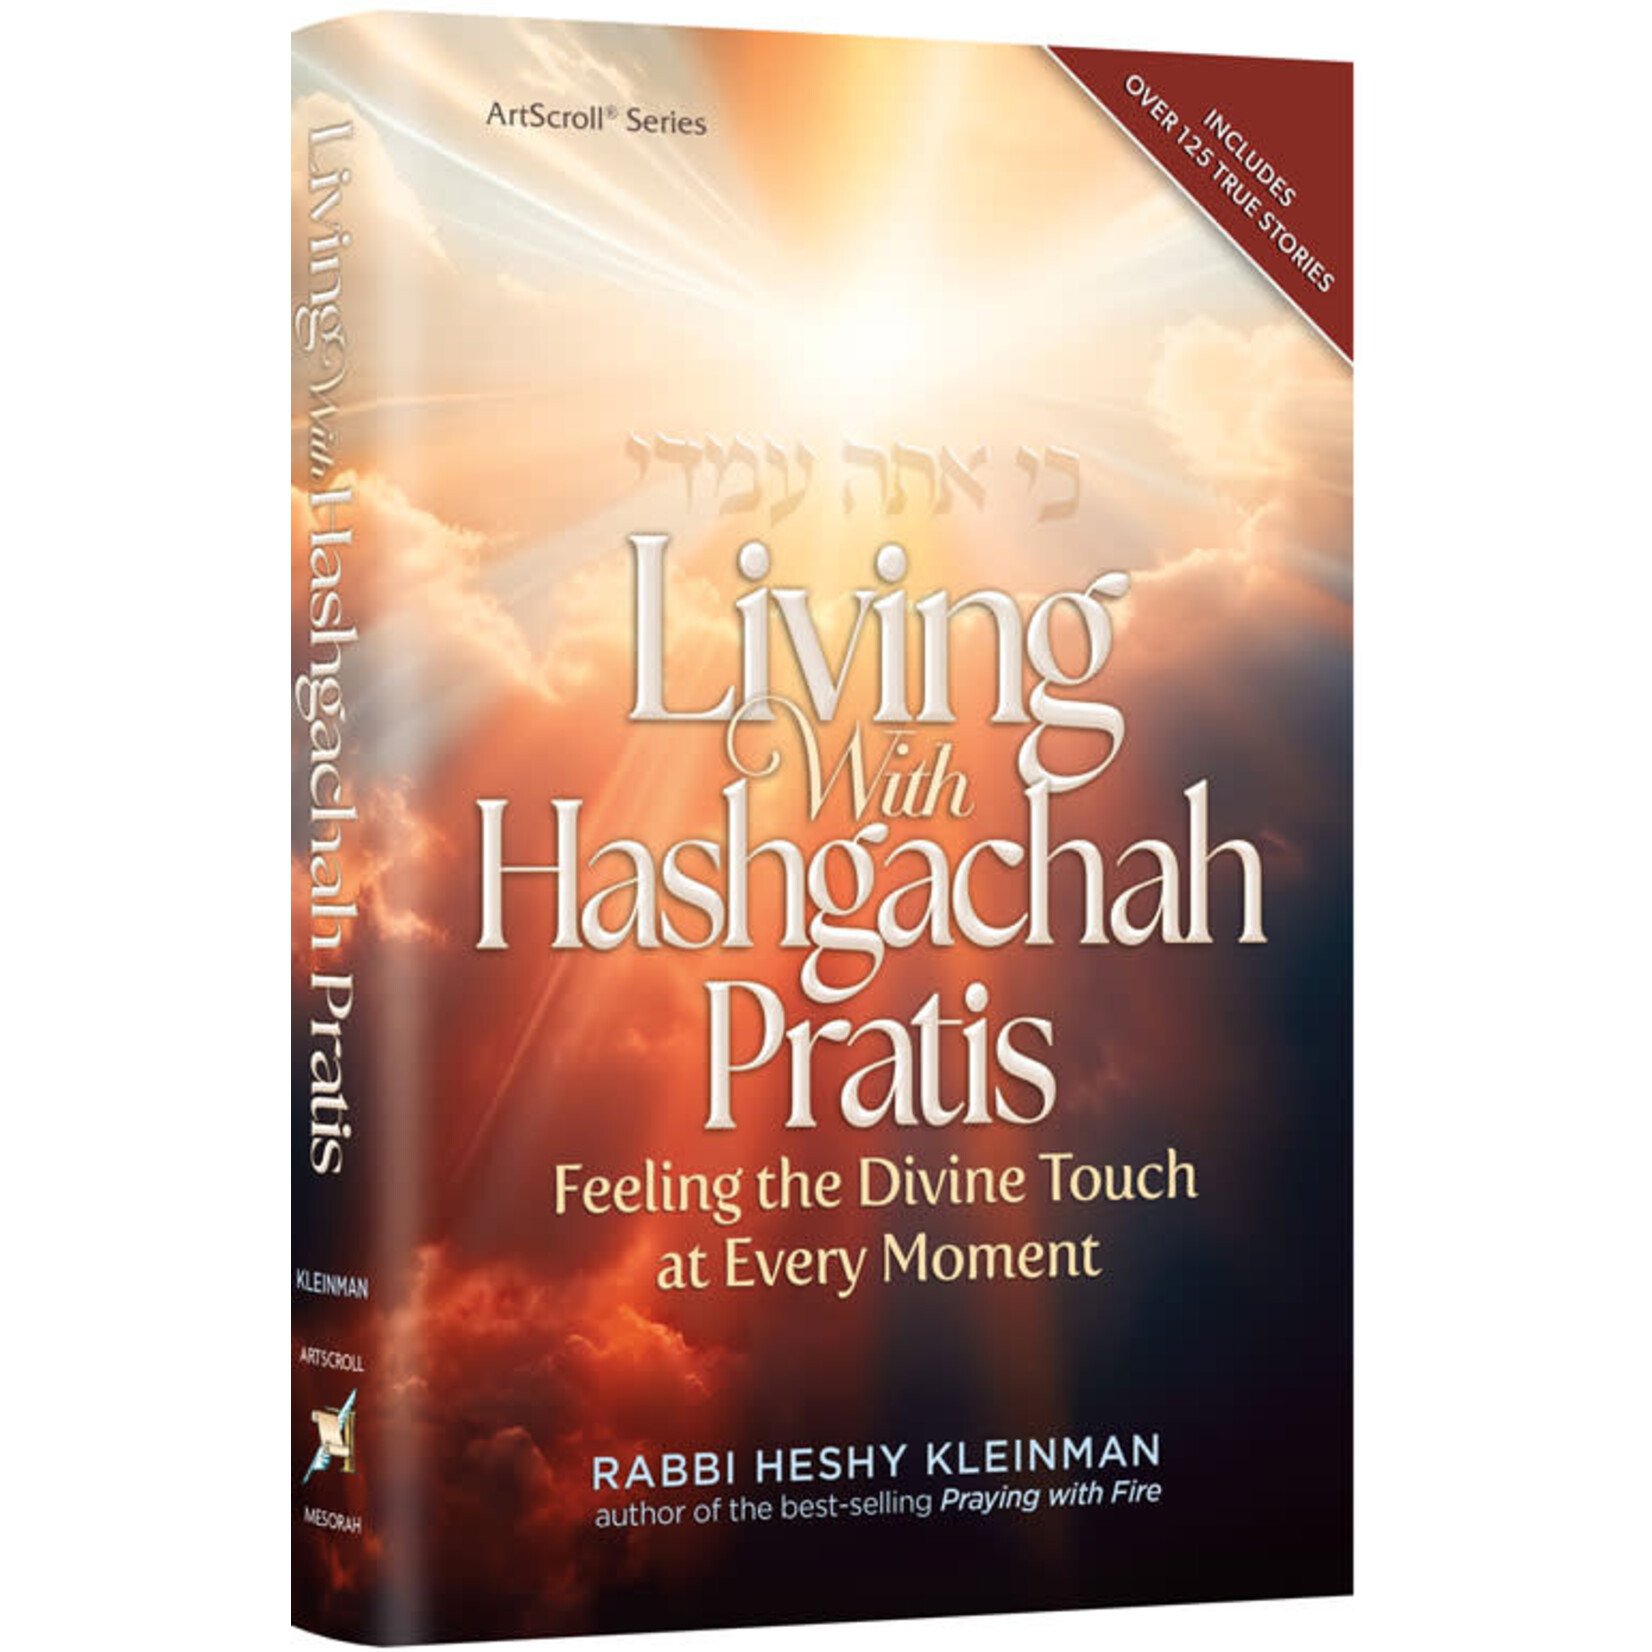 Living with Hashgacha Pratis